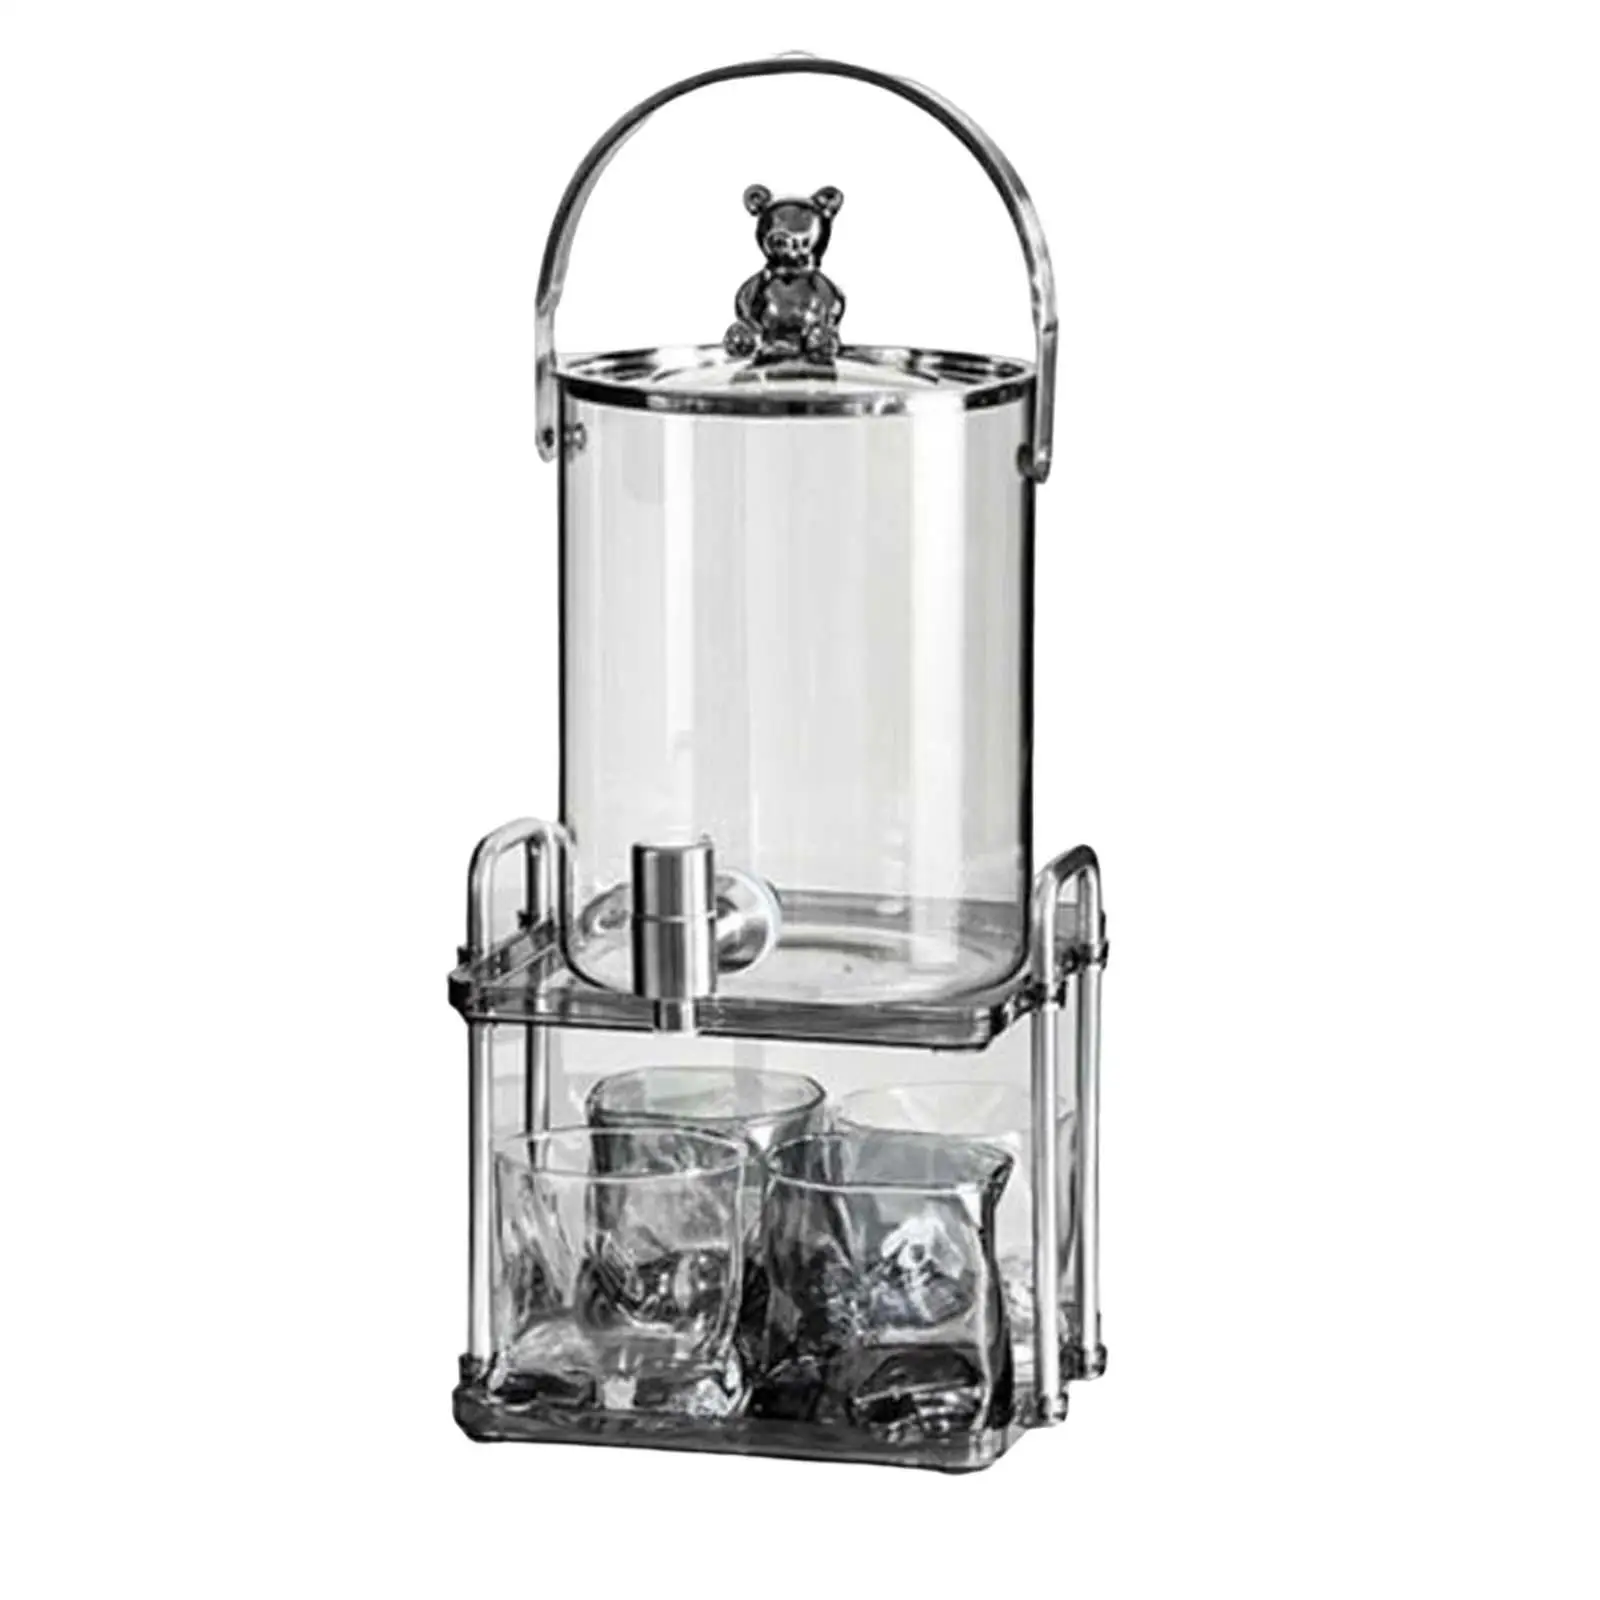 Water Kettle Set with Bracket Large Capacity Juice Jar 3L Iced Beverage Dispenser for Dining Room Home Kitchen Fridge Lemonade